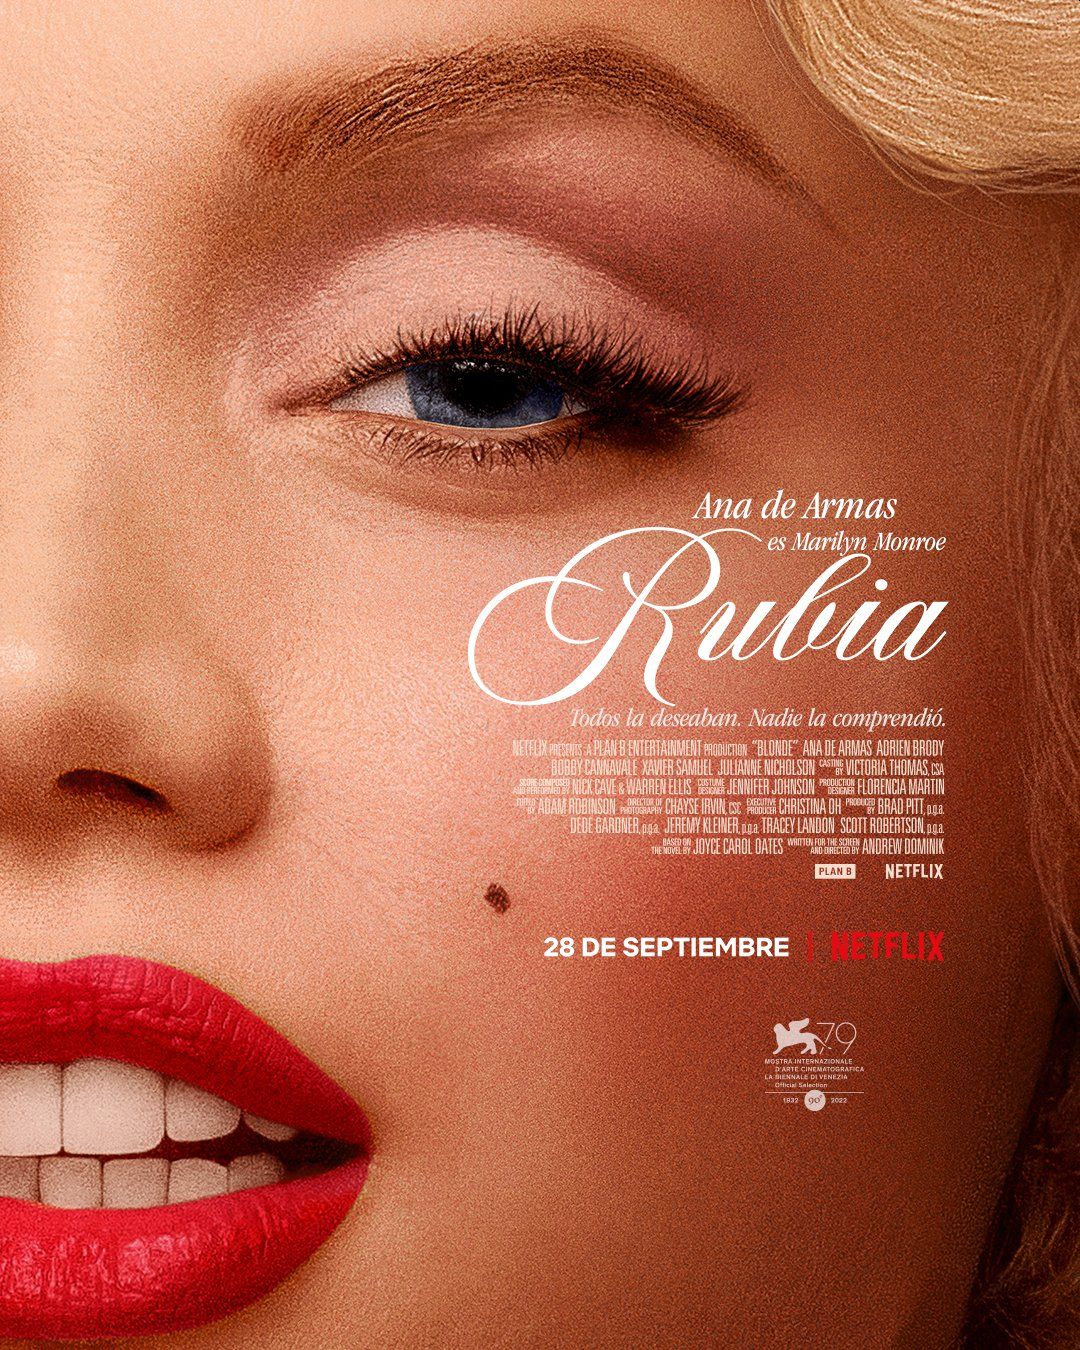 Póster oficial del lanzamiento de "Blonde", la biopic de Marilyn Monroe. (Netflix)